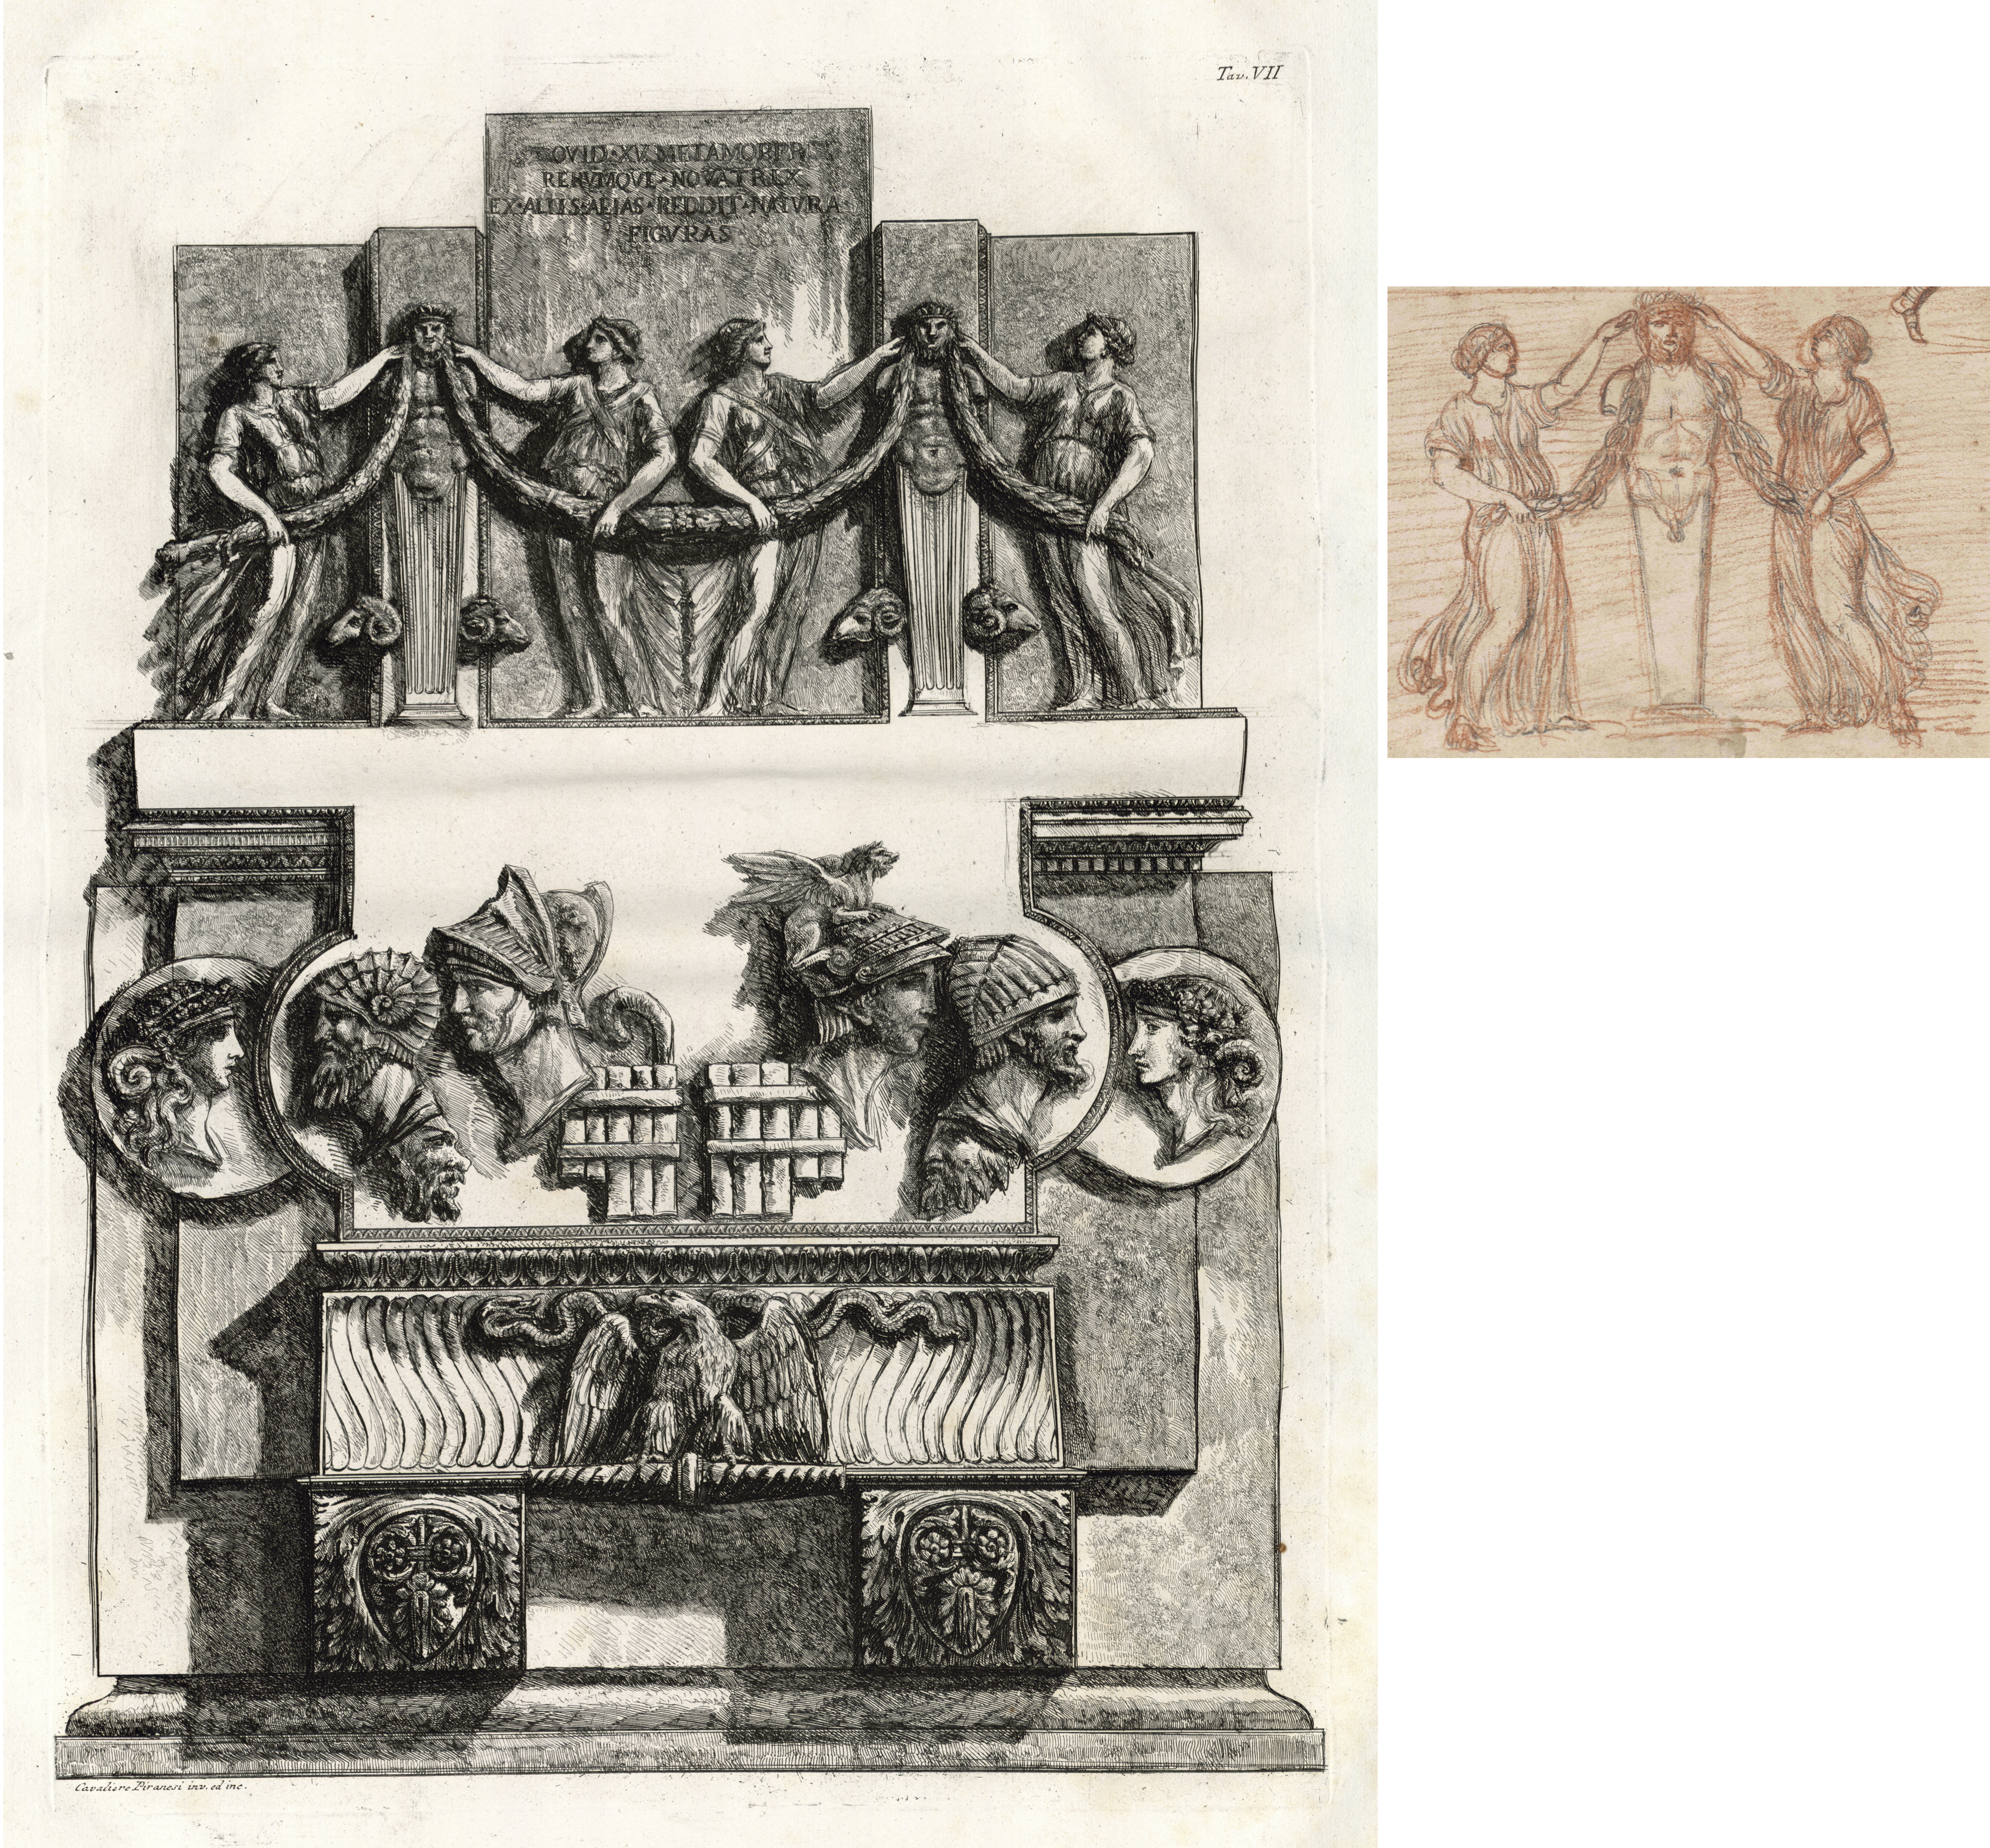 Vergleich zweier Piranesi Zeichnungen mit Architekturornamenten